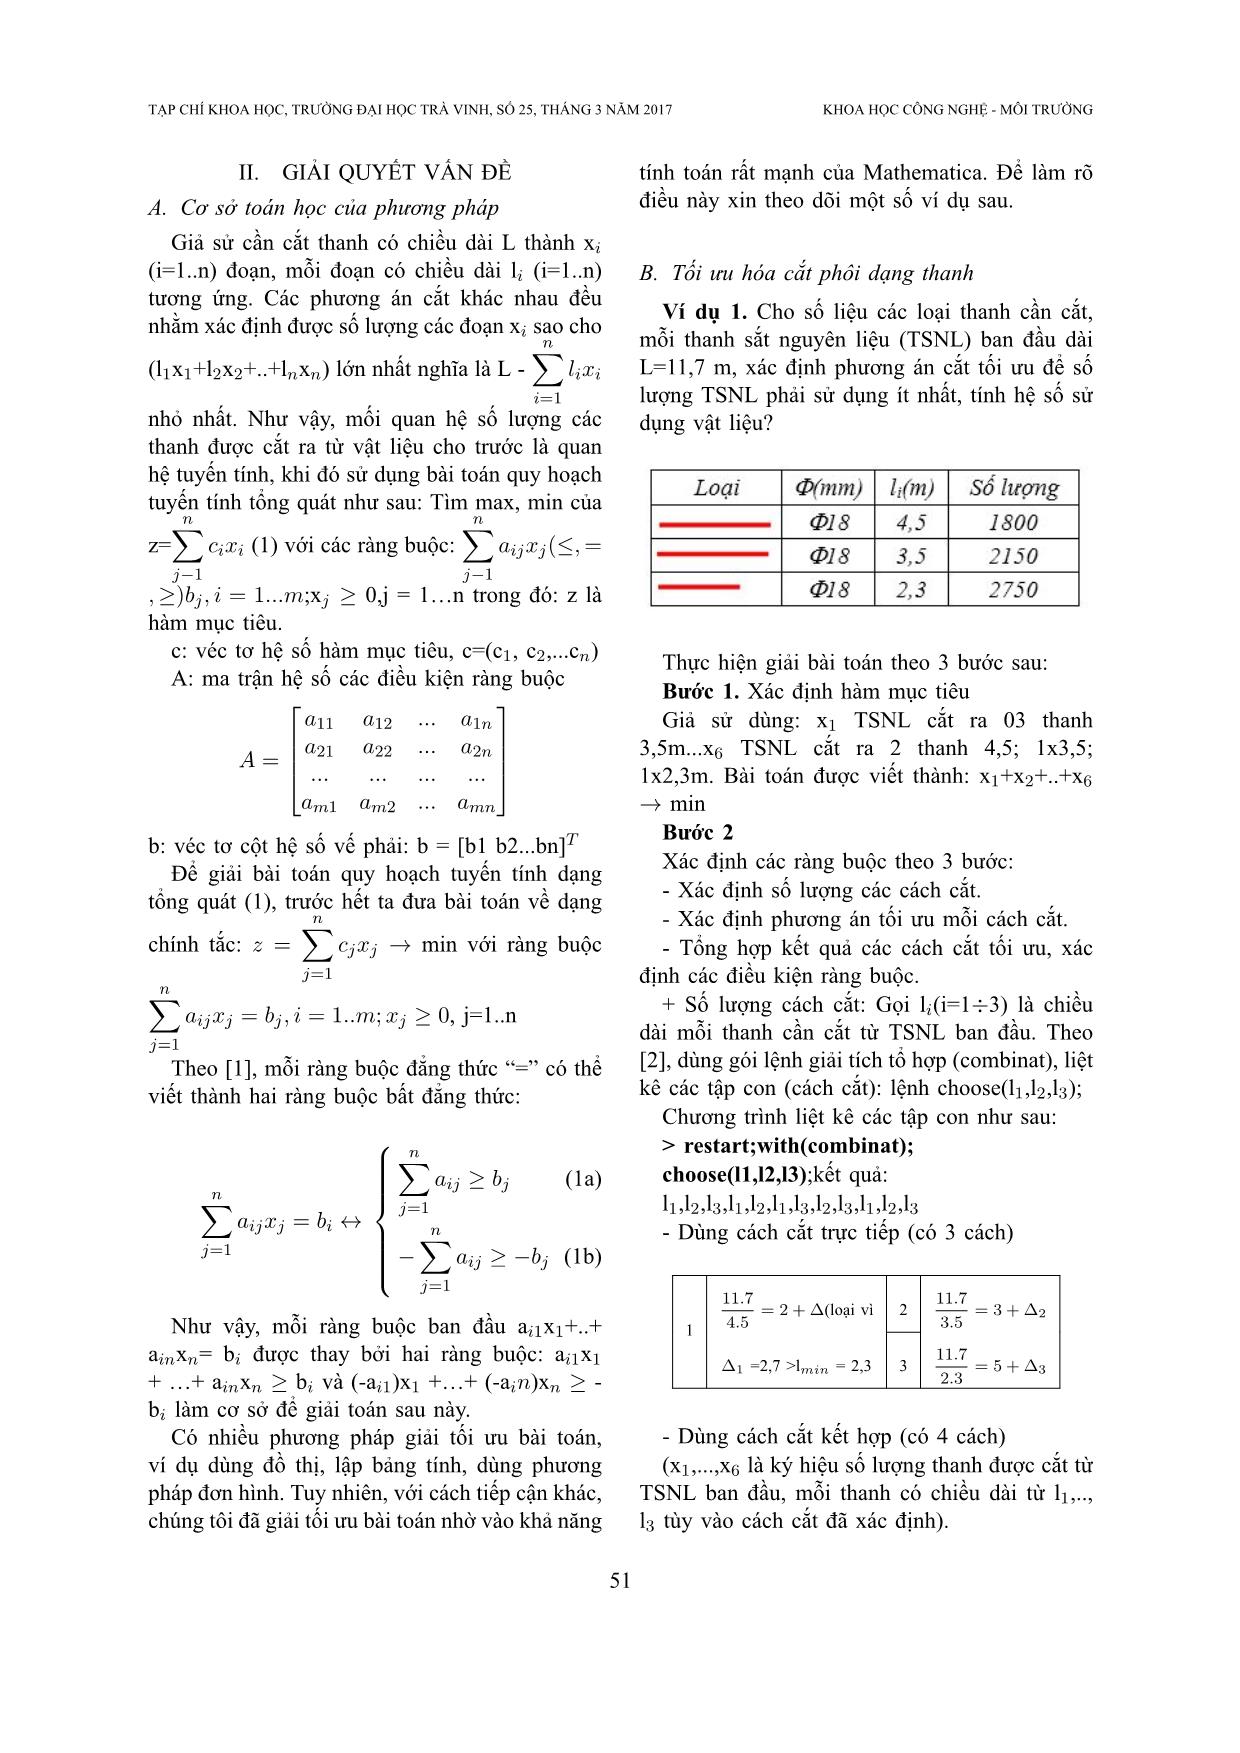 Phương pháp tối ưu cắt vật liệu dạng thanh bằng ứng dụng phần mềm Mathematica trang 2